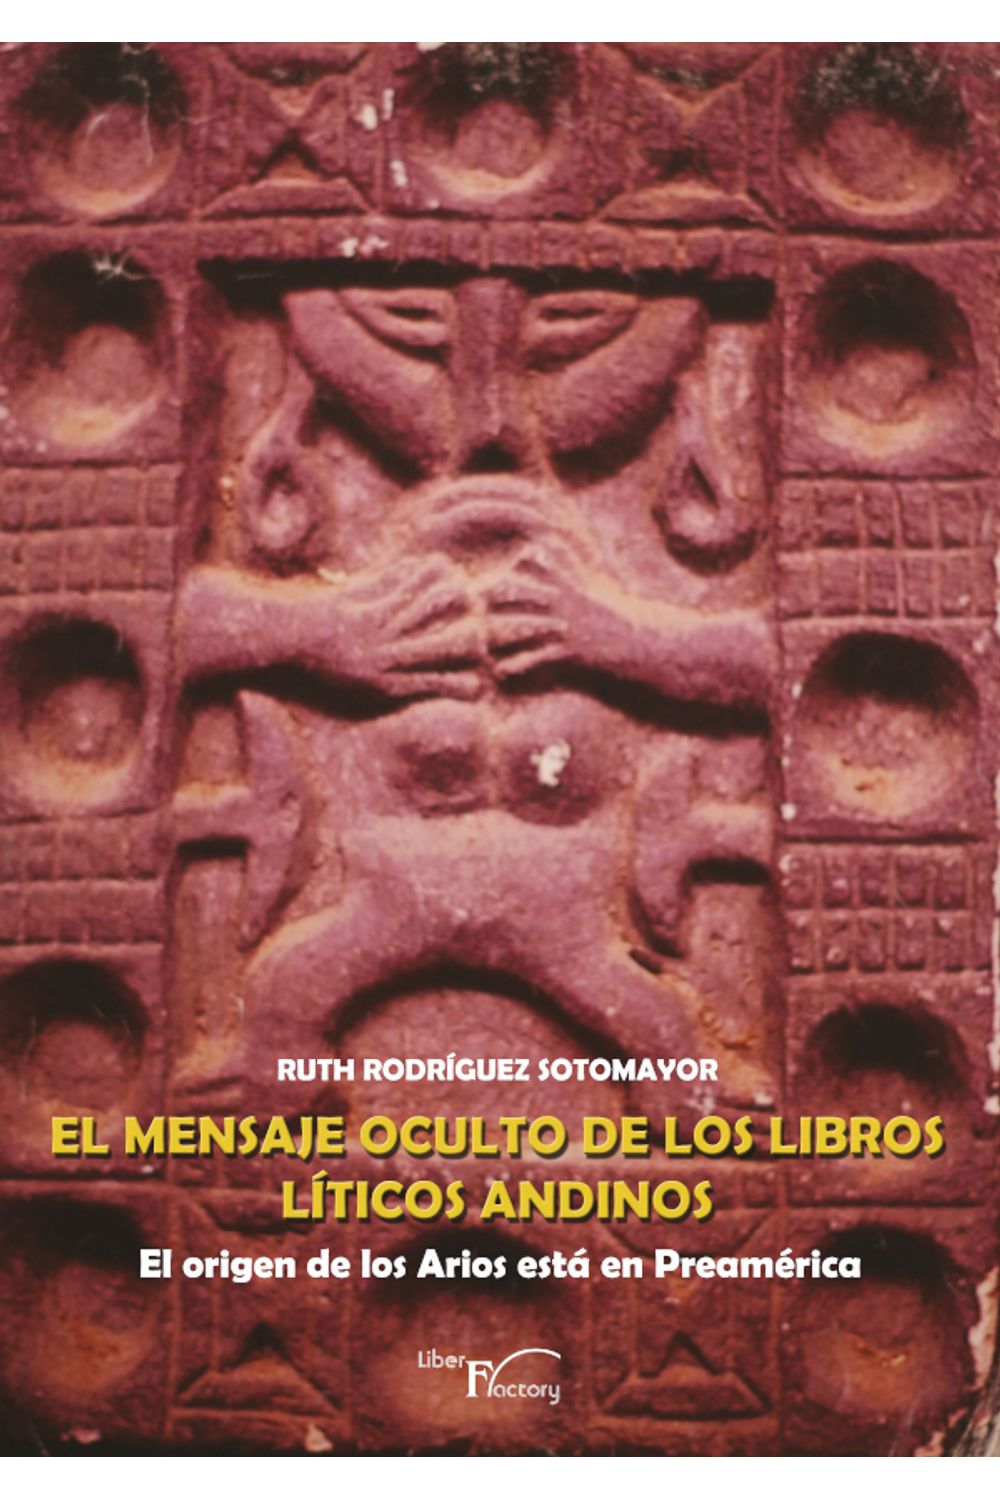 bm-el-mensaje-oculto-de-los-libros-liticos-andinos-grupo-editor-vision-net-9788499492841